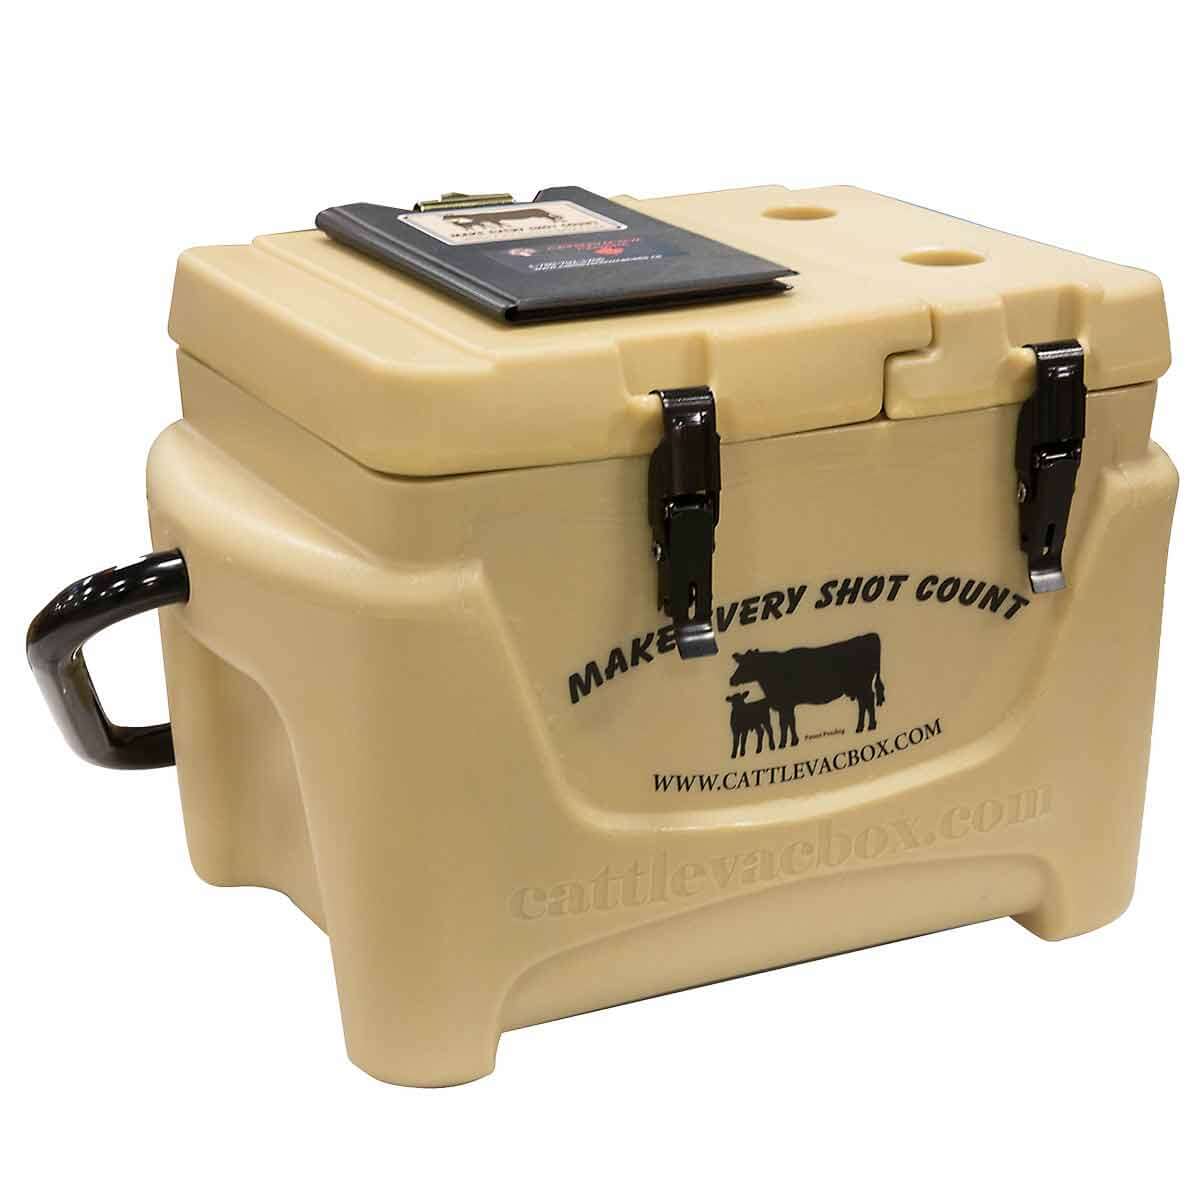 Cattle Vac Box Jr